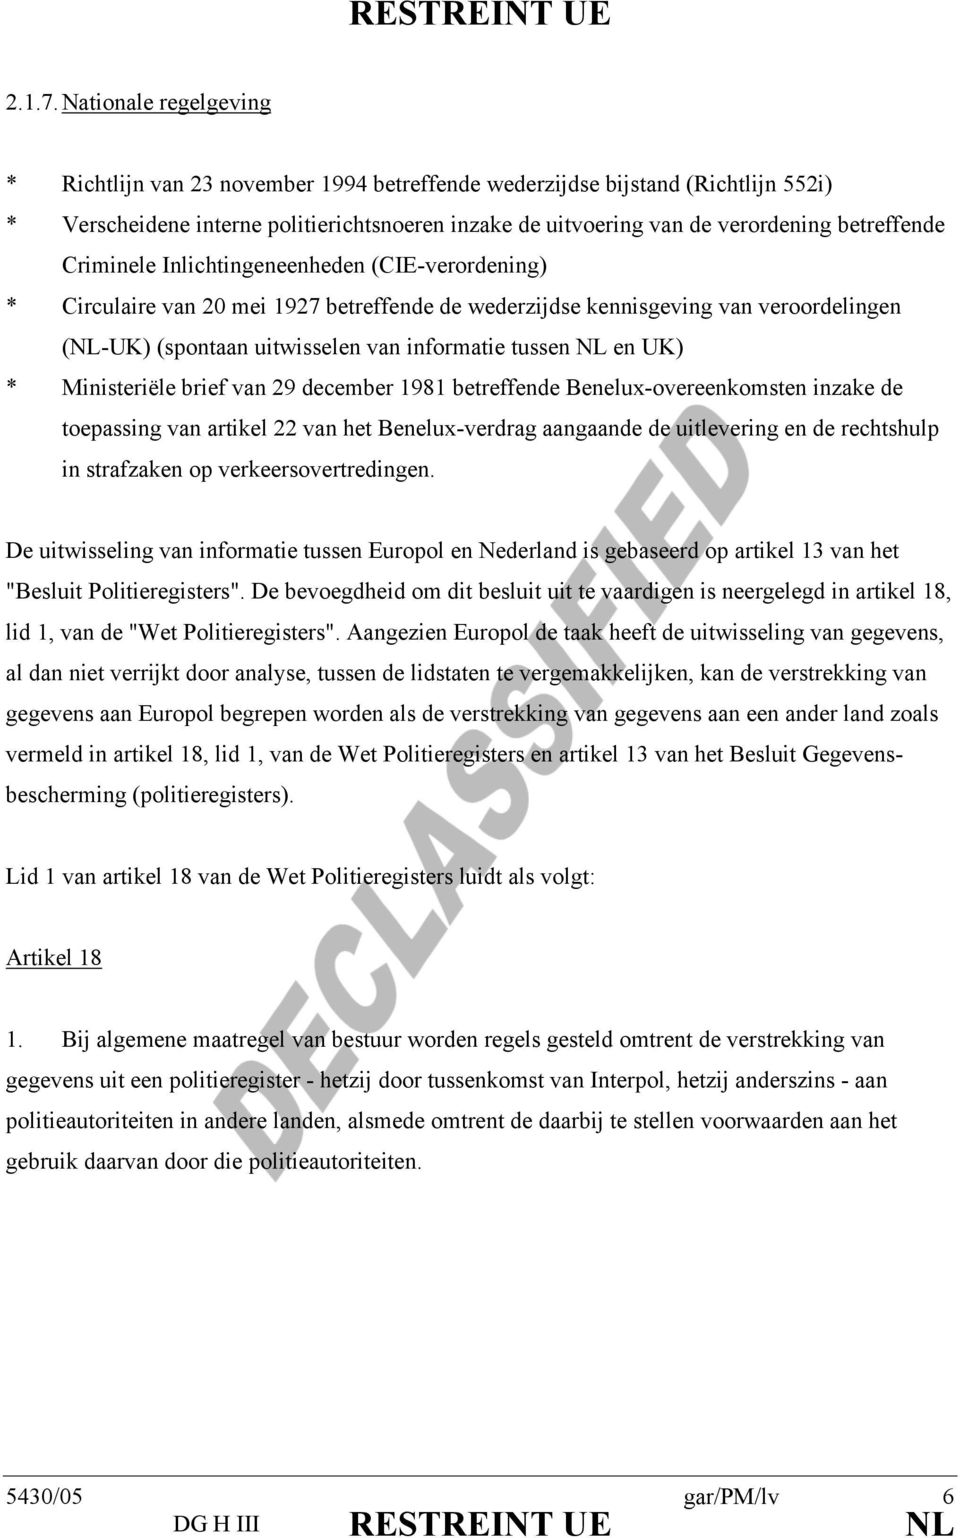 Criminele Inlichtingeneenheden (CIE-verordening) * Circulaire van 20 mei 1927 betreffende de wederzijdse kennisgeving van veroordelingen (NL-UK) (spontaan uitwisselen van informatie tussen NL en UK)